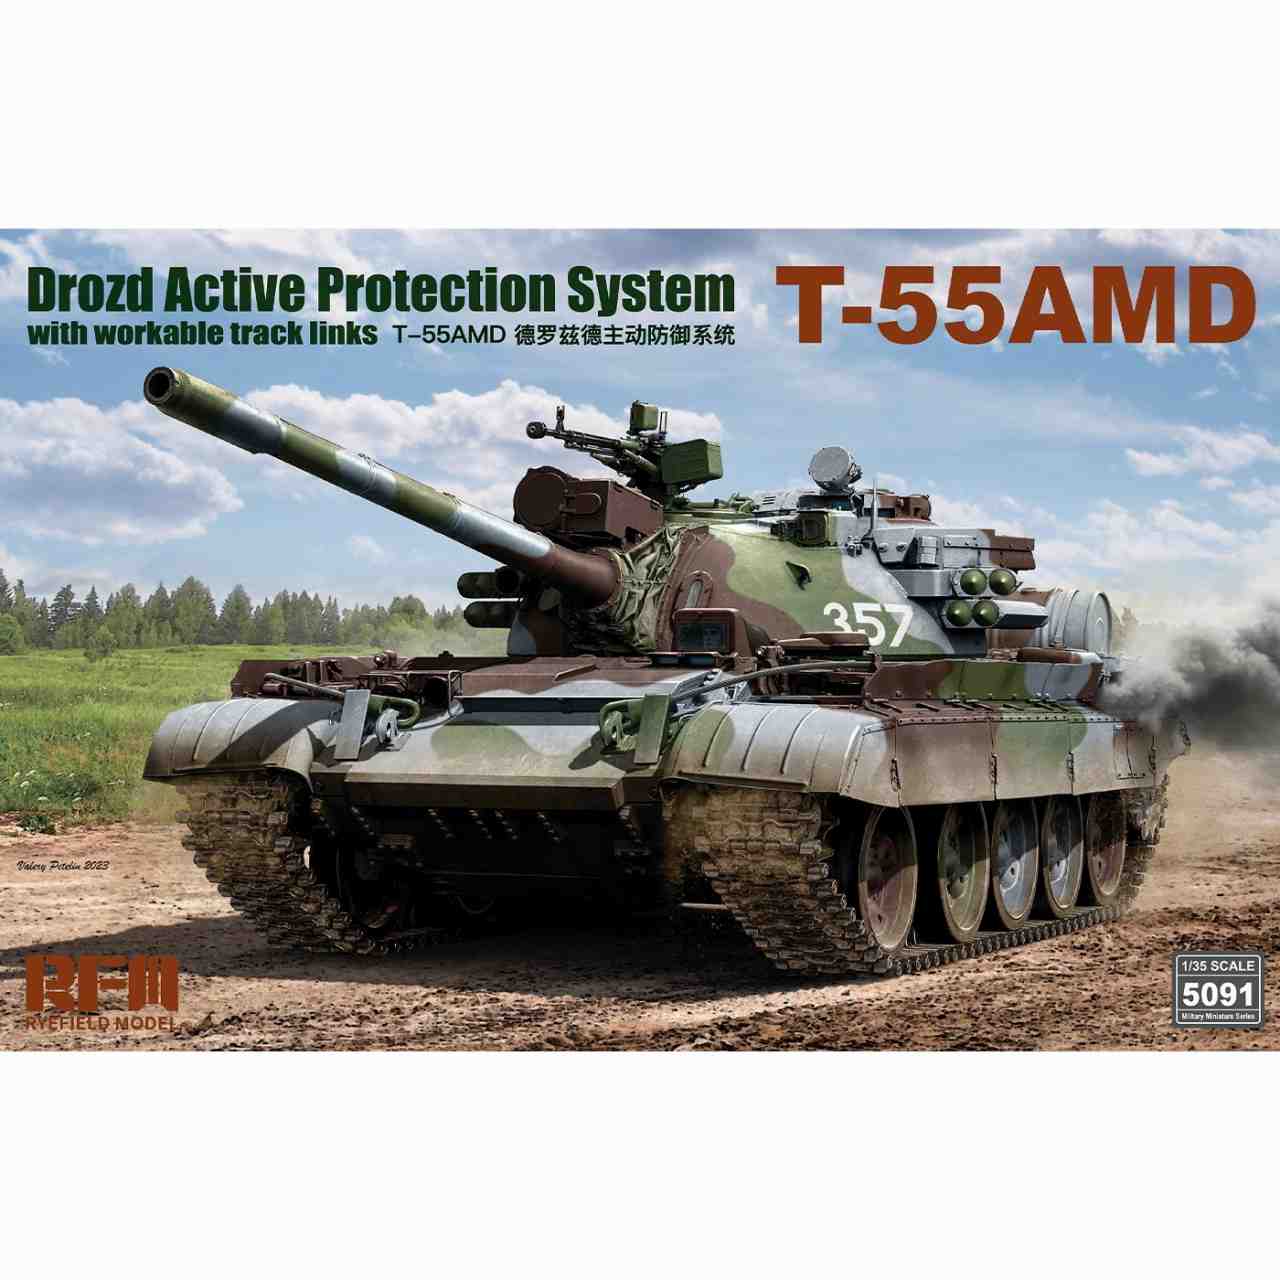 【新製品】5091 1/35 T-55AMD 中戦車w/ドローストシステム & 可動式履帯